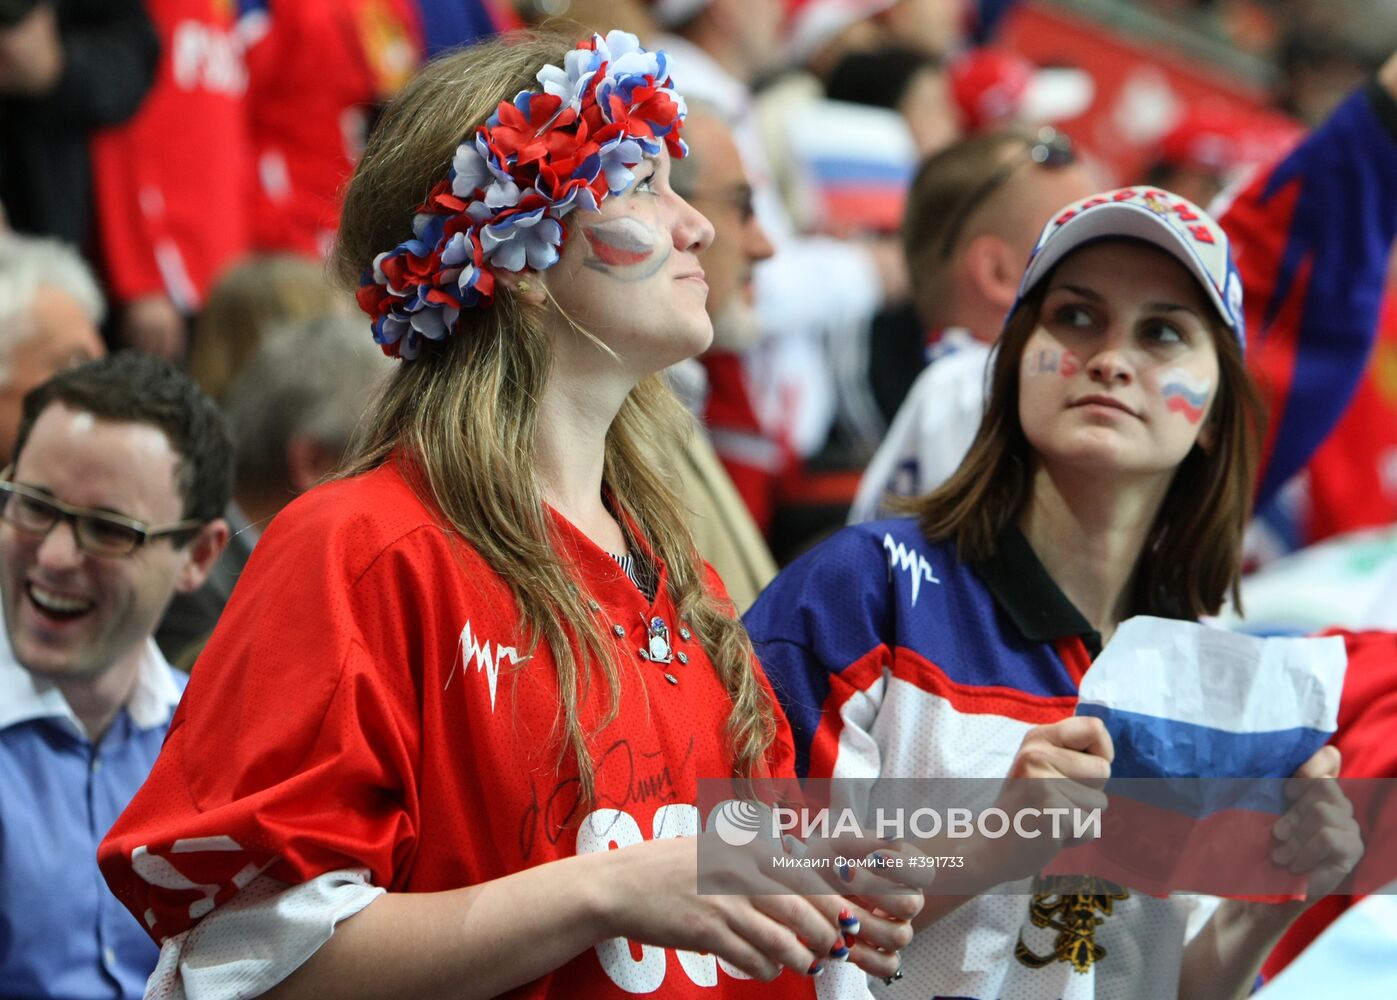 Чемпионат мира по хоккею. Россия - Белоруссия 4:3